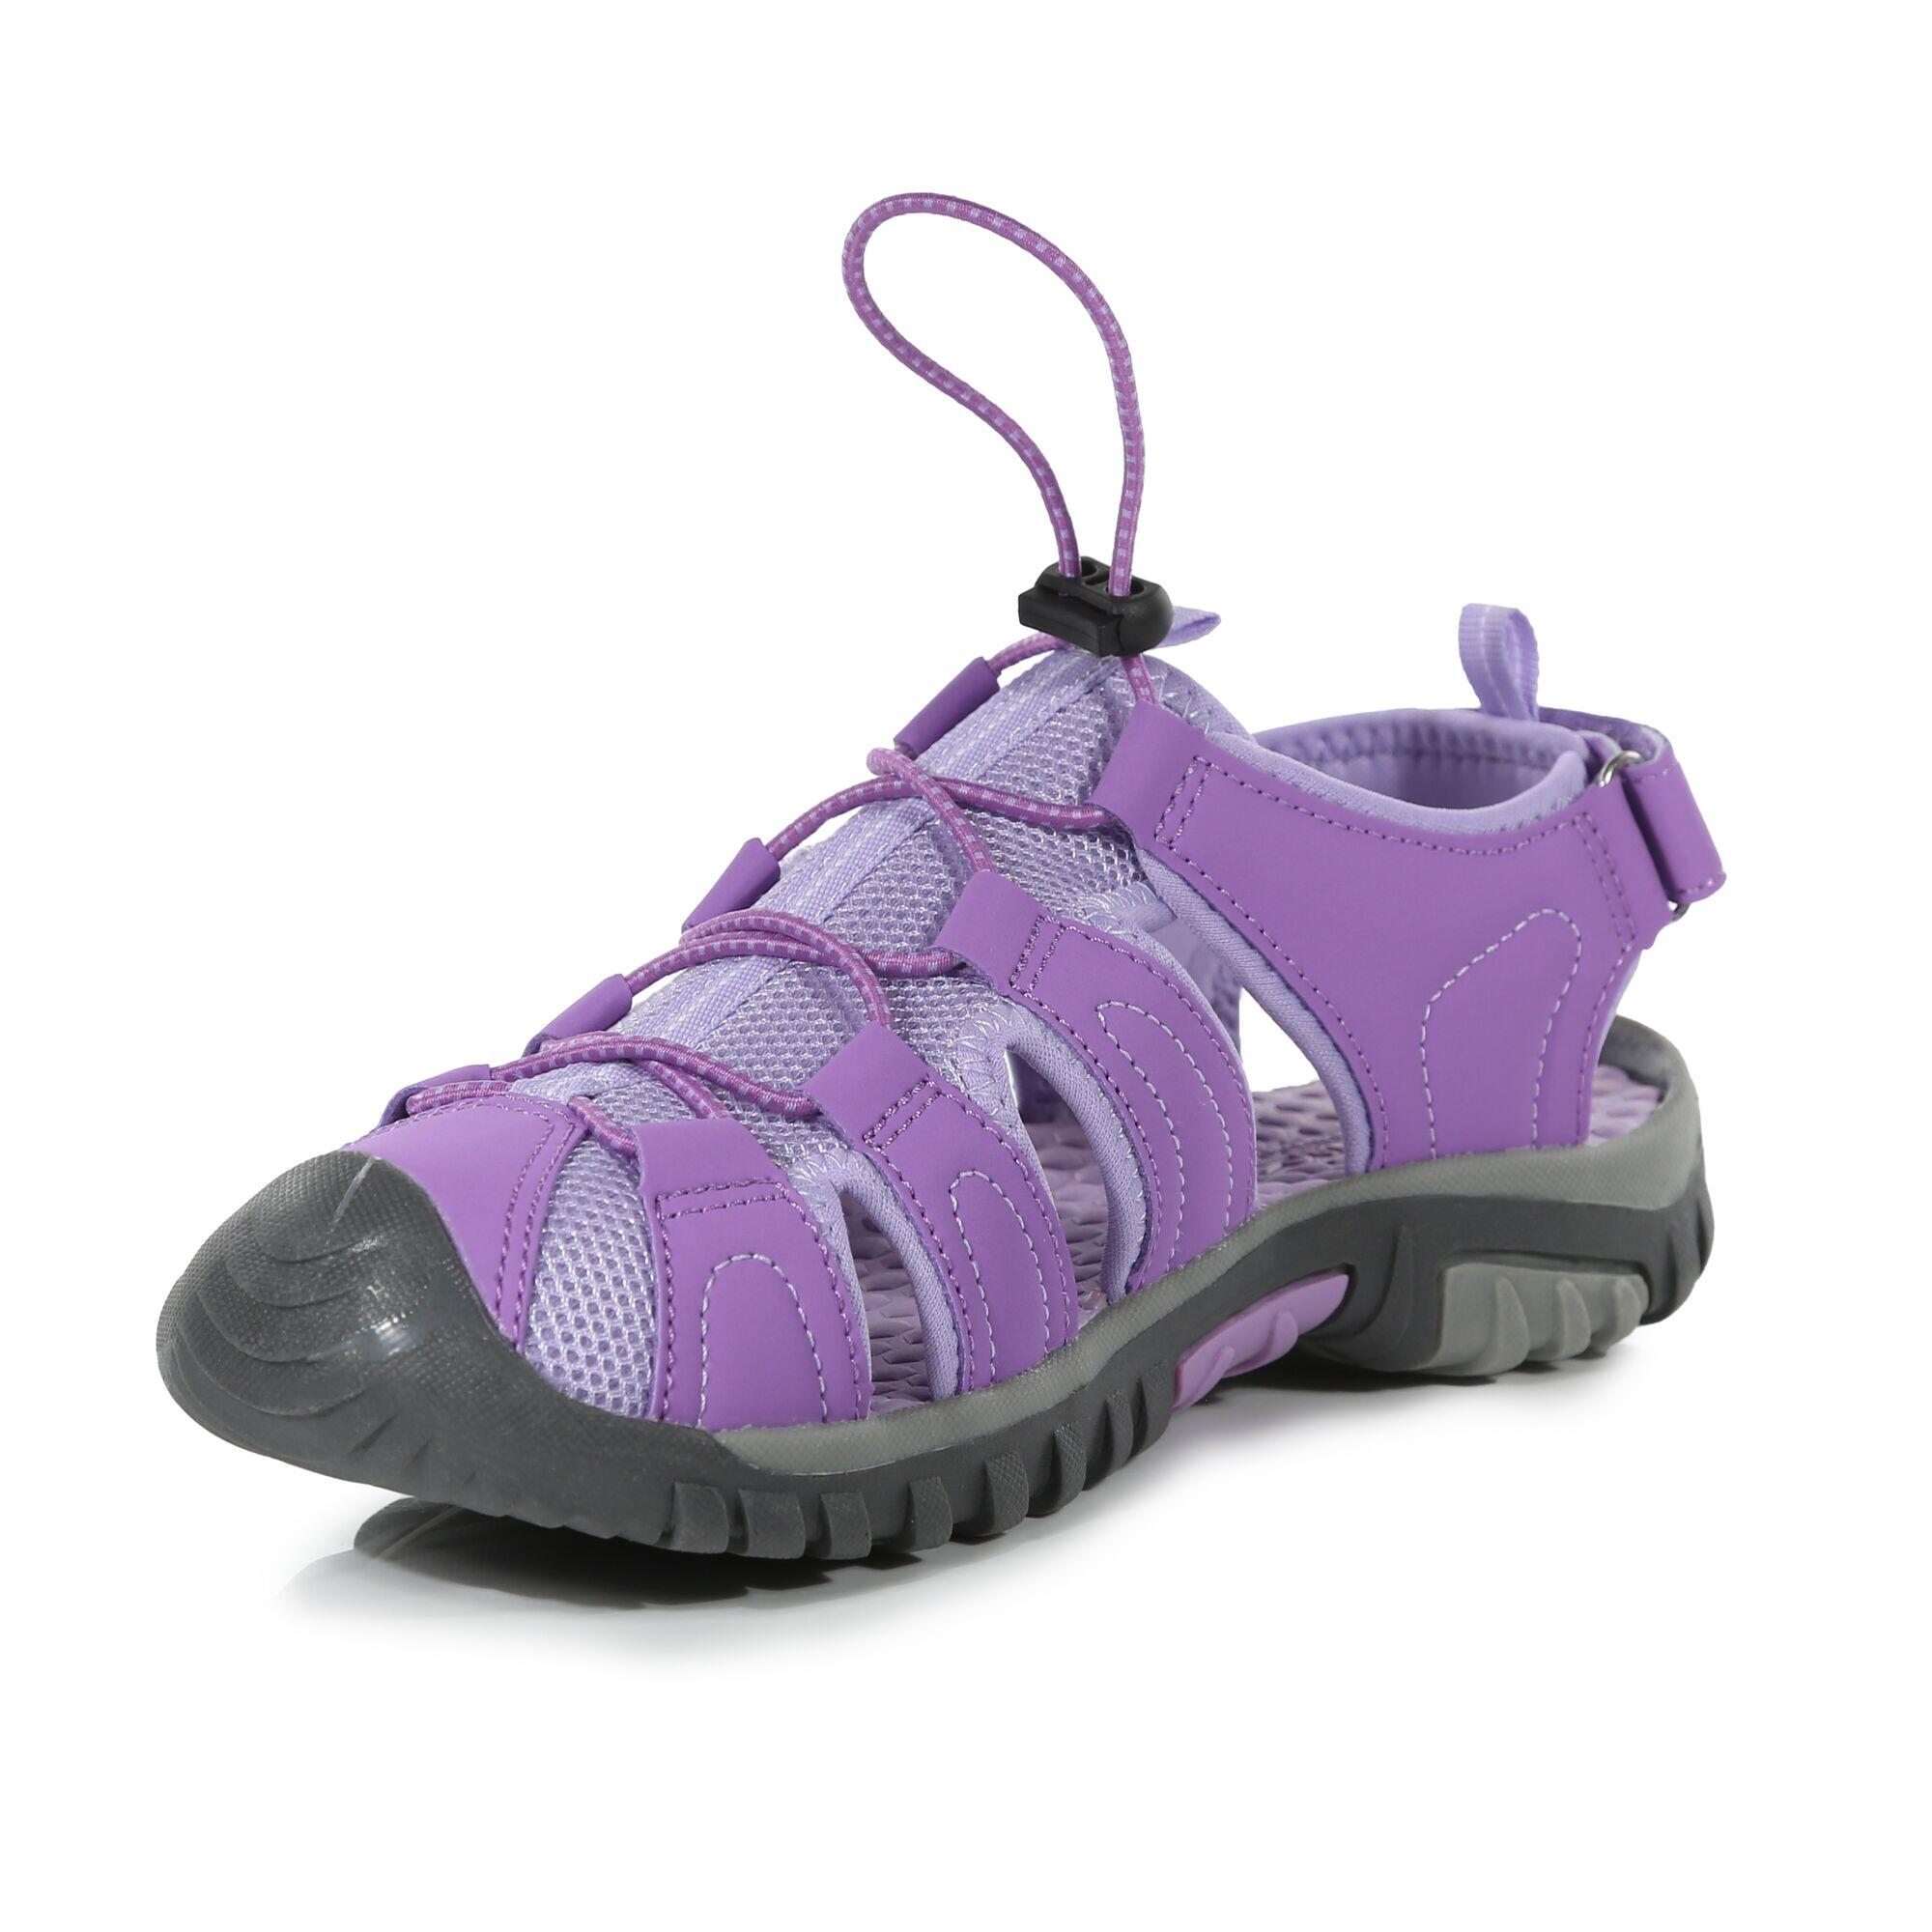 Westshore Junior Kids Walking Sandals - Purple Amethyst 3/5